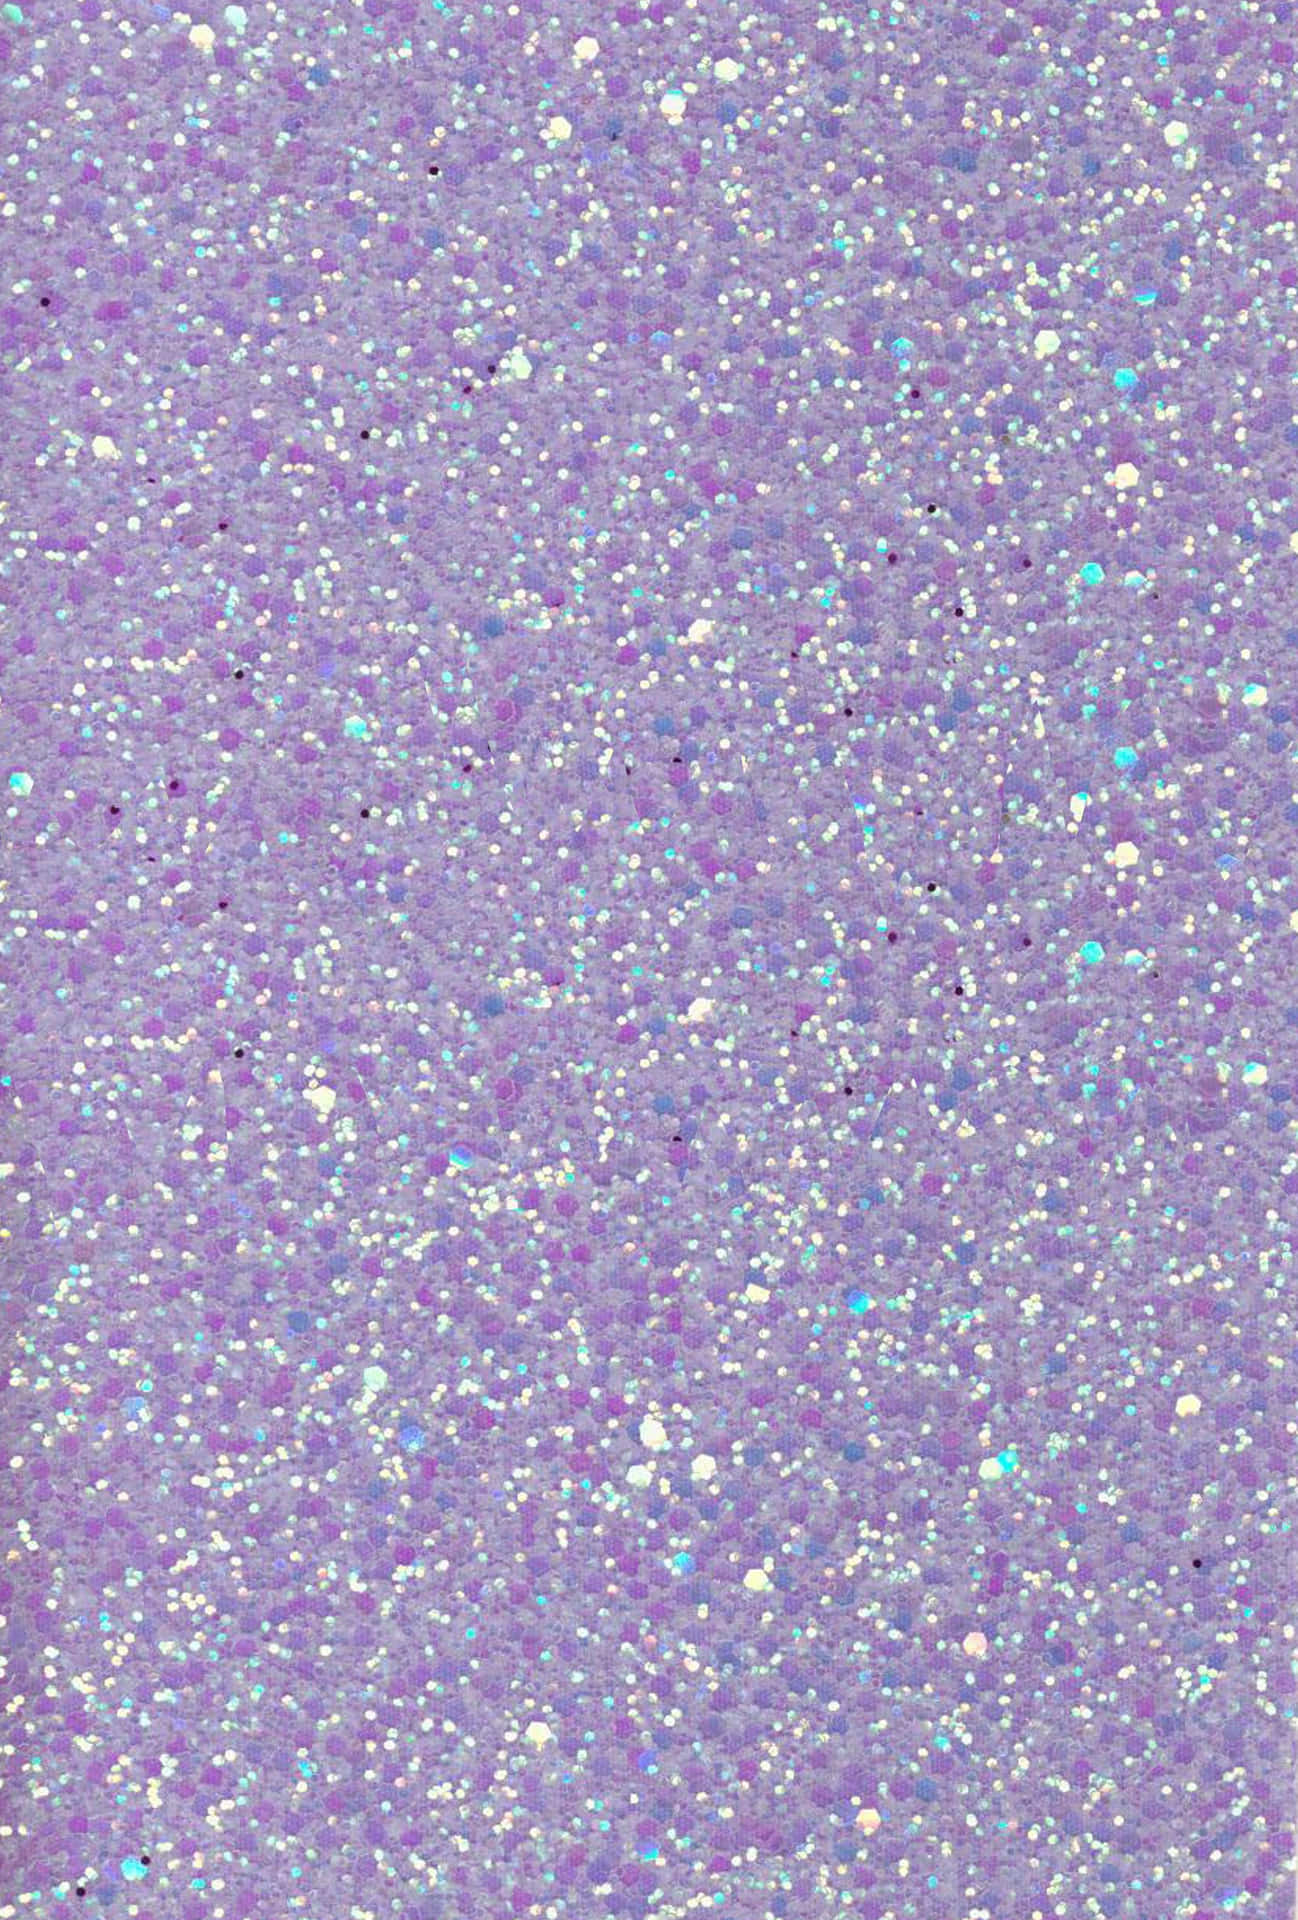 Dark Purple Glitter Stones HD Glitter Wallpapers  HD Wallpapers  ID 83862